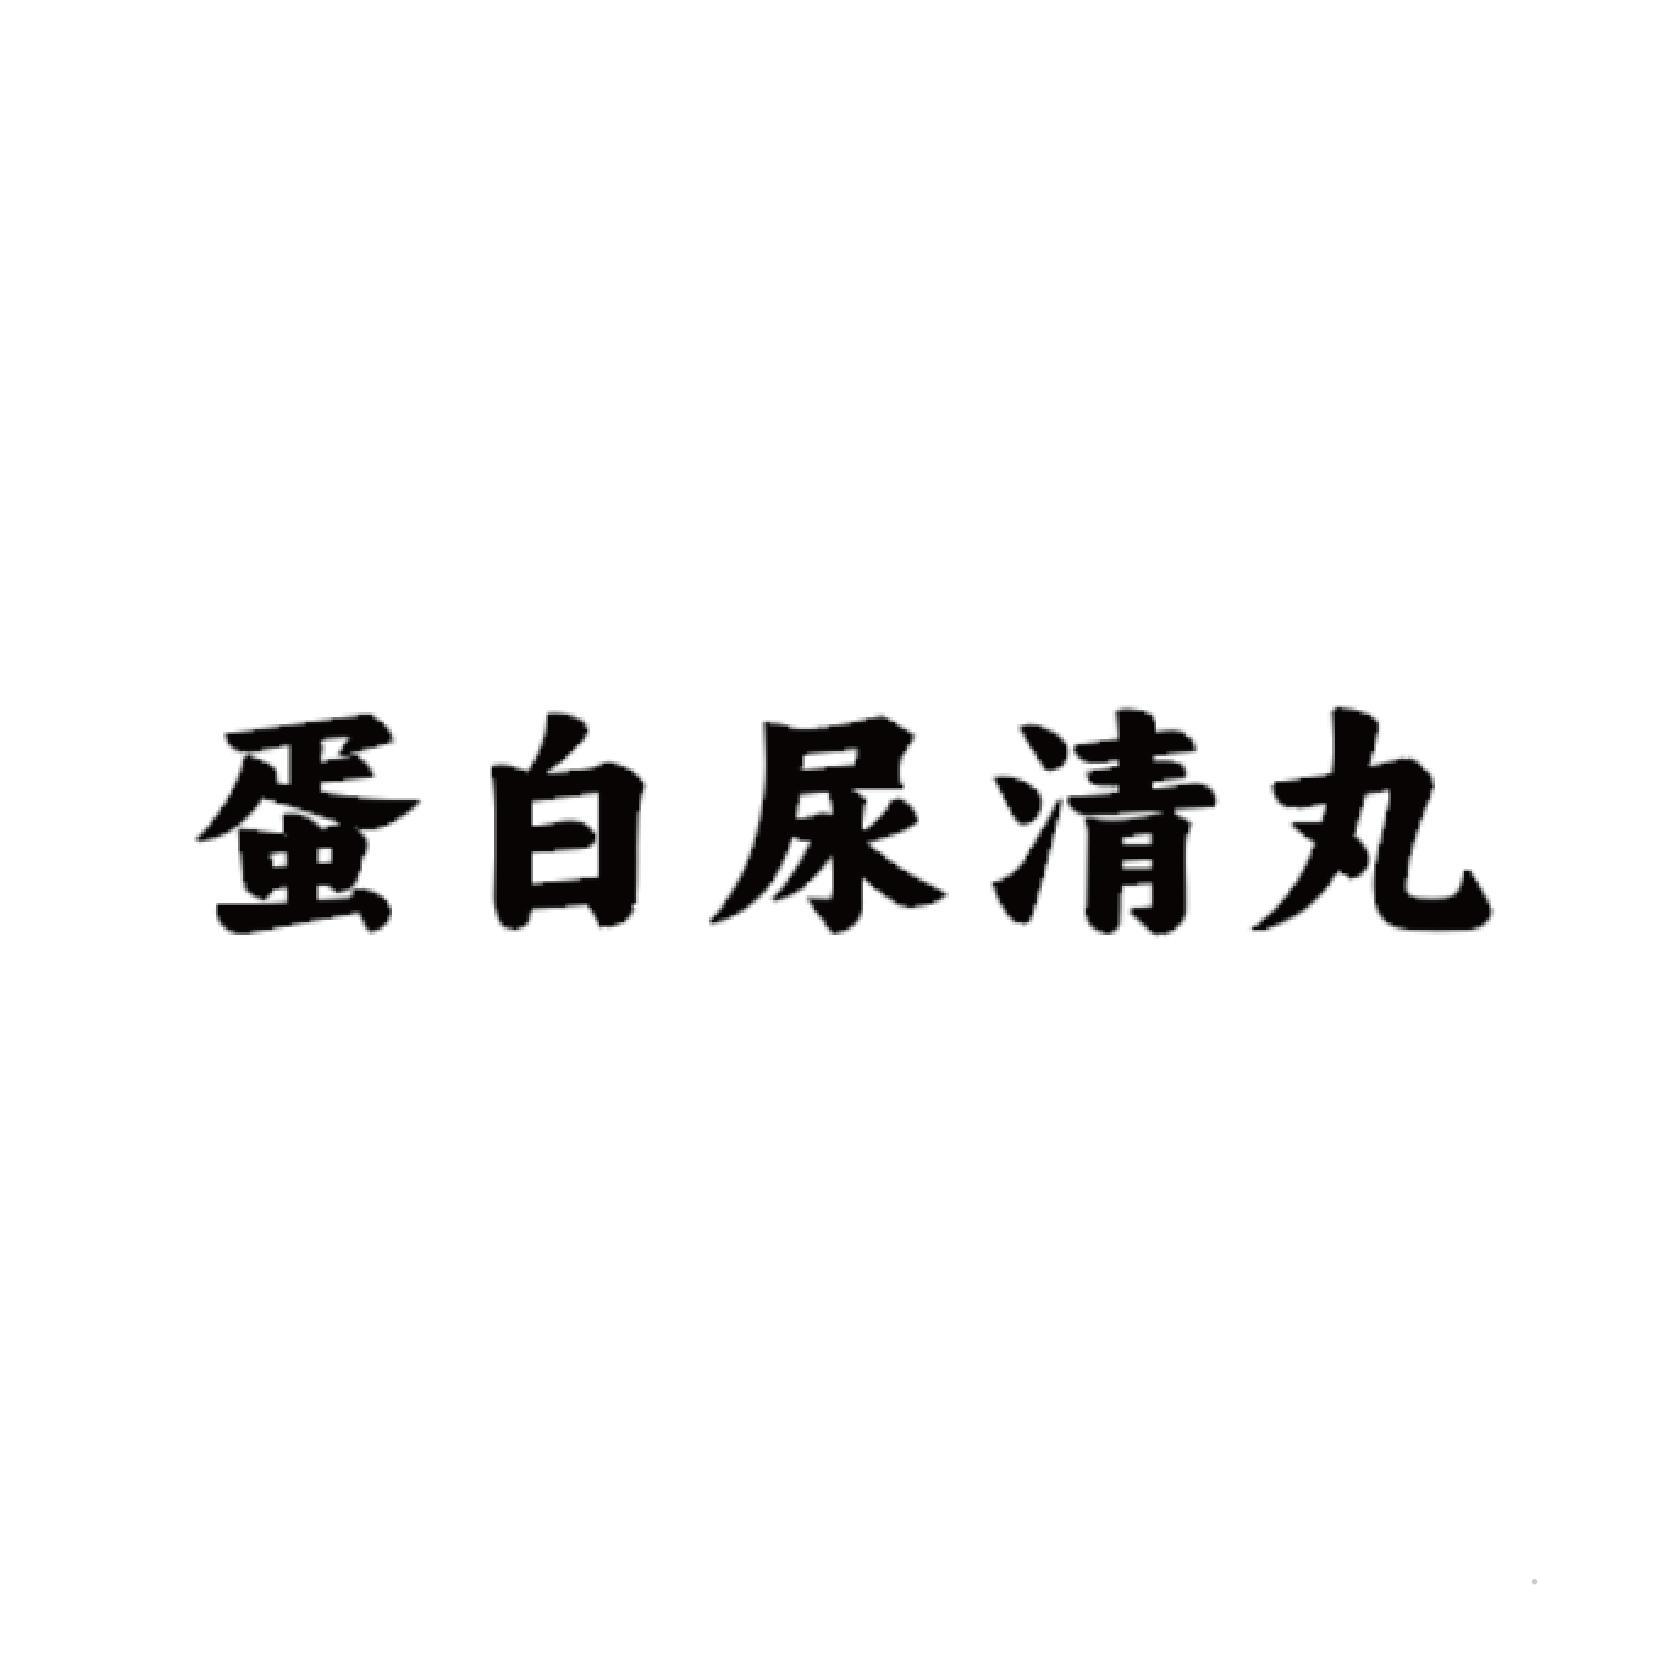 蛋白尿清丸logo